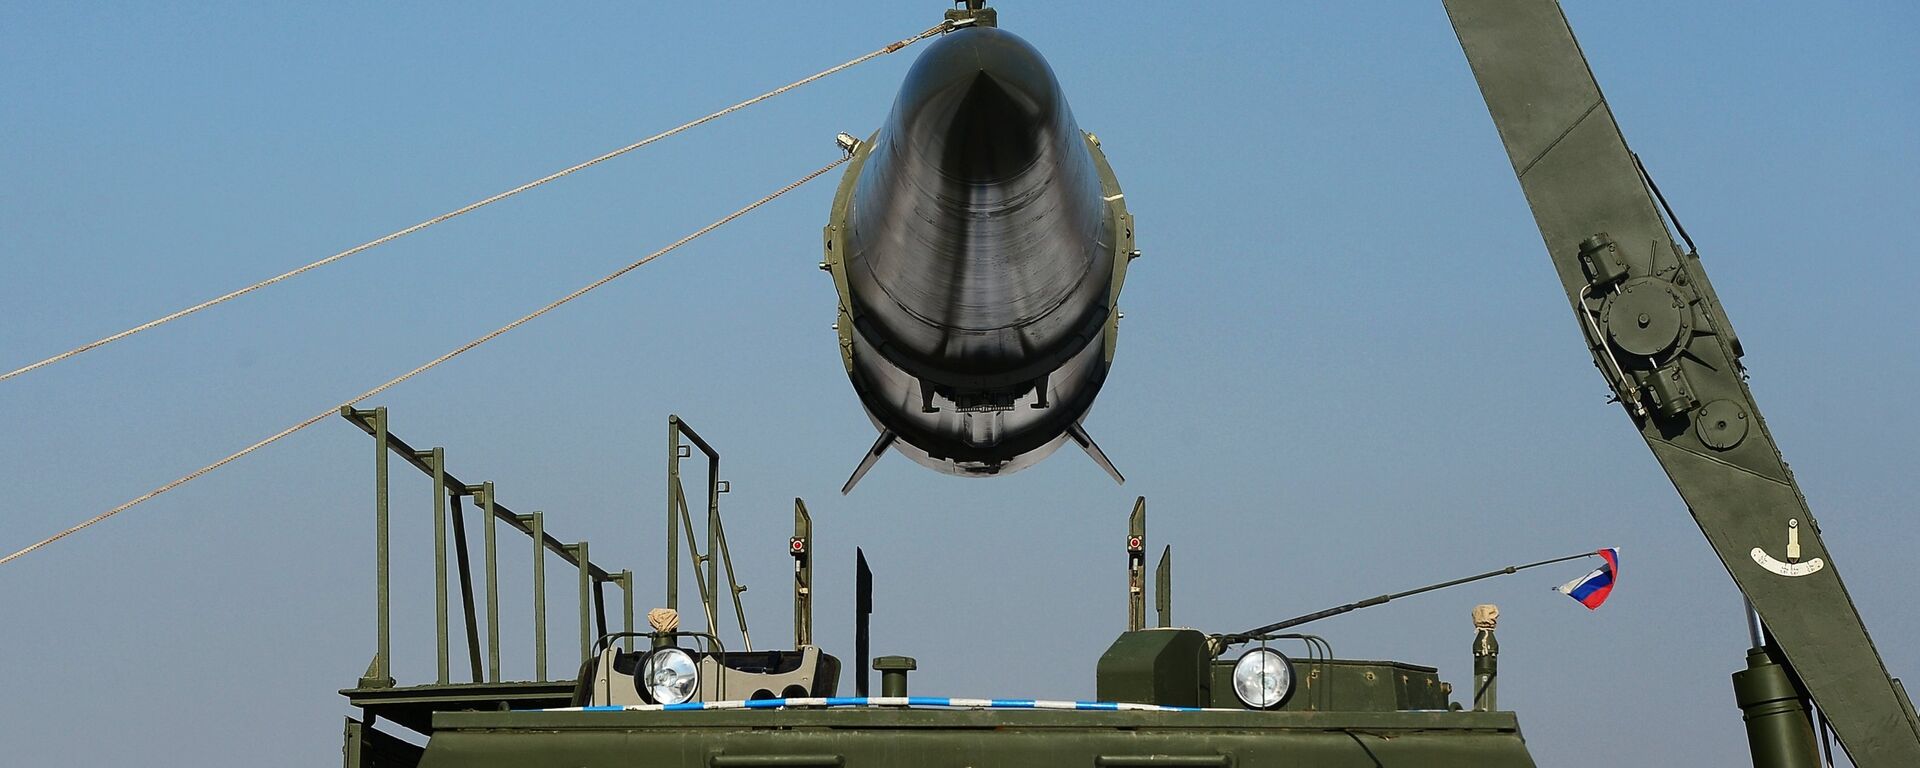 Загрузка ракеты транспортно-заряжающий машиной на самоходную пусковую установку оперативно-тактического ракетного комплекса Искандер-М - Sputnik Latvija, 1920, 27.02.2021